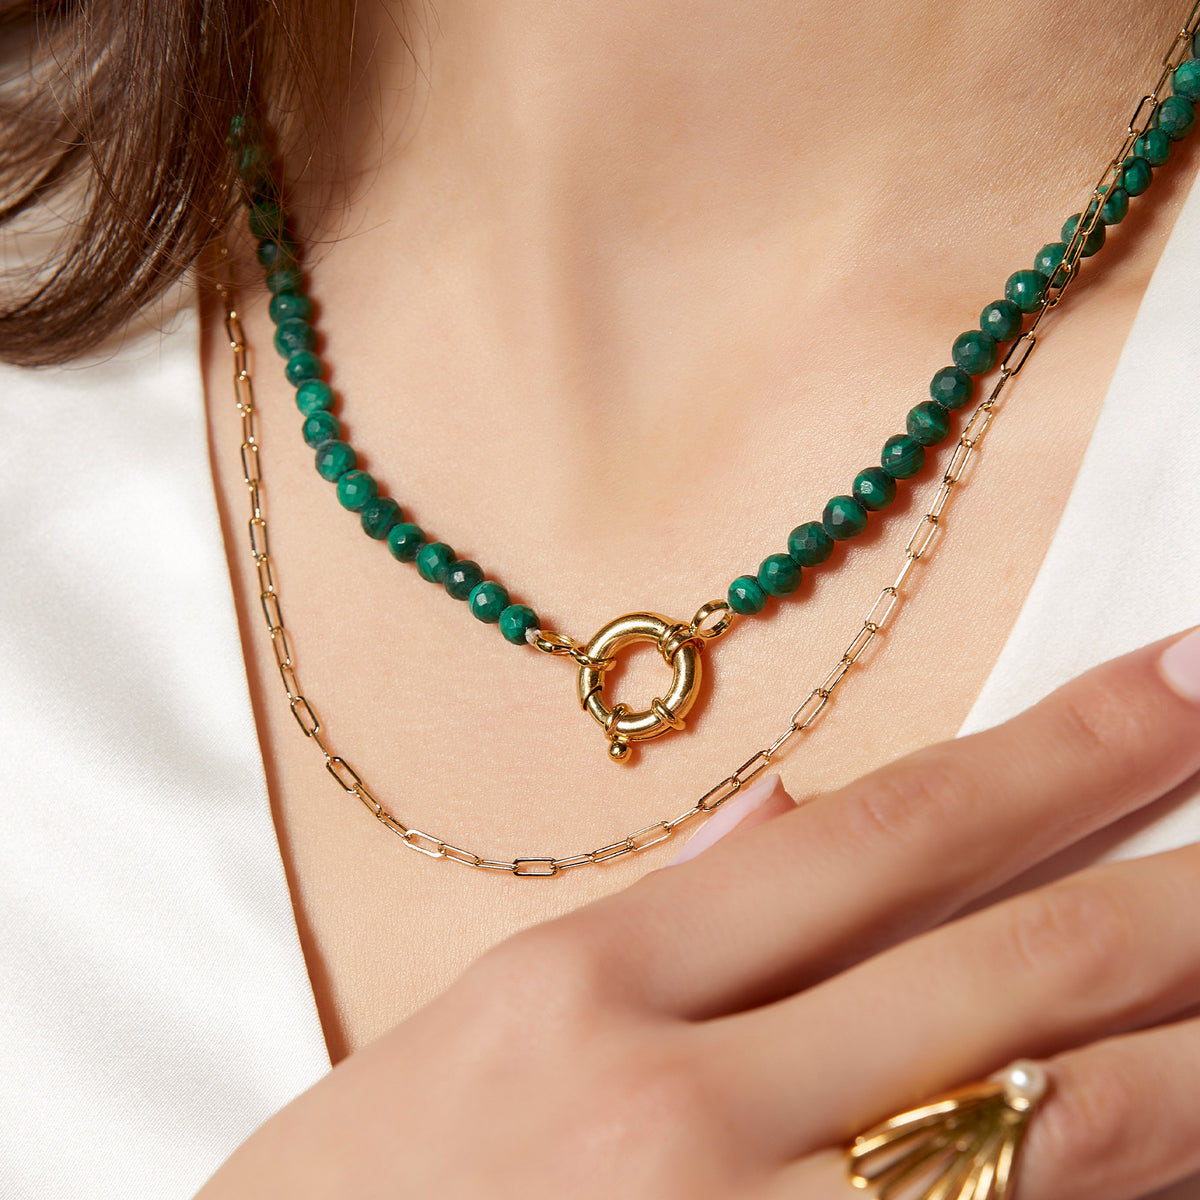 22K Gold Emeralds Necklace & Drop Earrings Set - 235-SET213 in 32.200 Grams